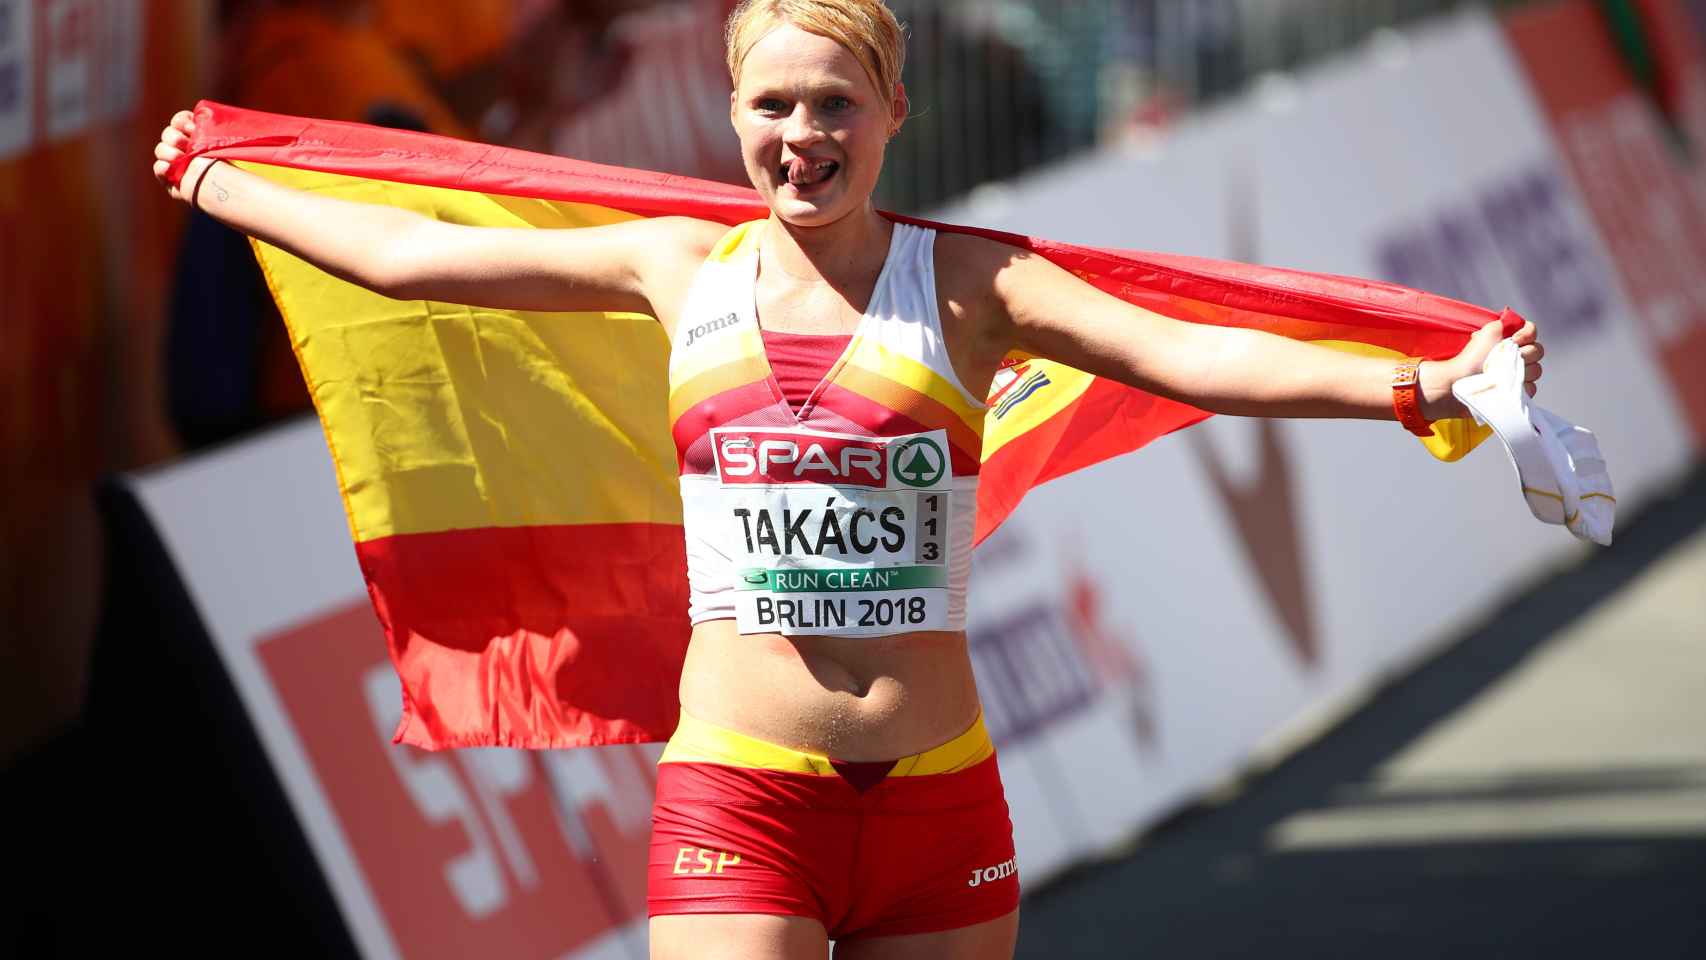 La atleta Julia Takács, al finalizar la carrera.